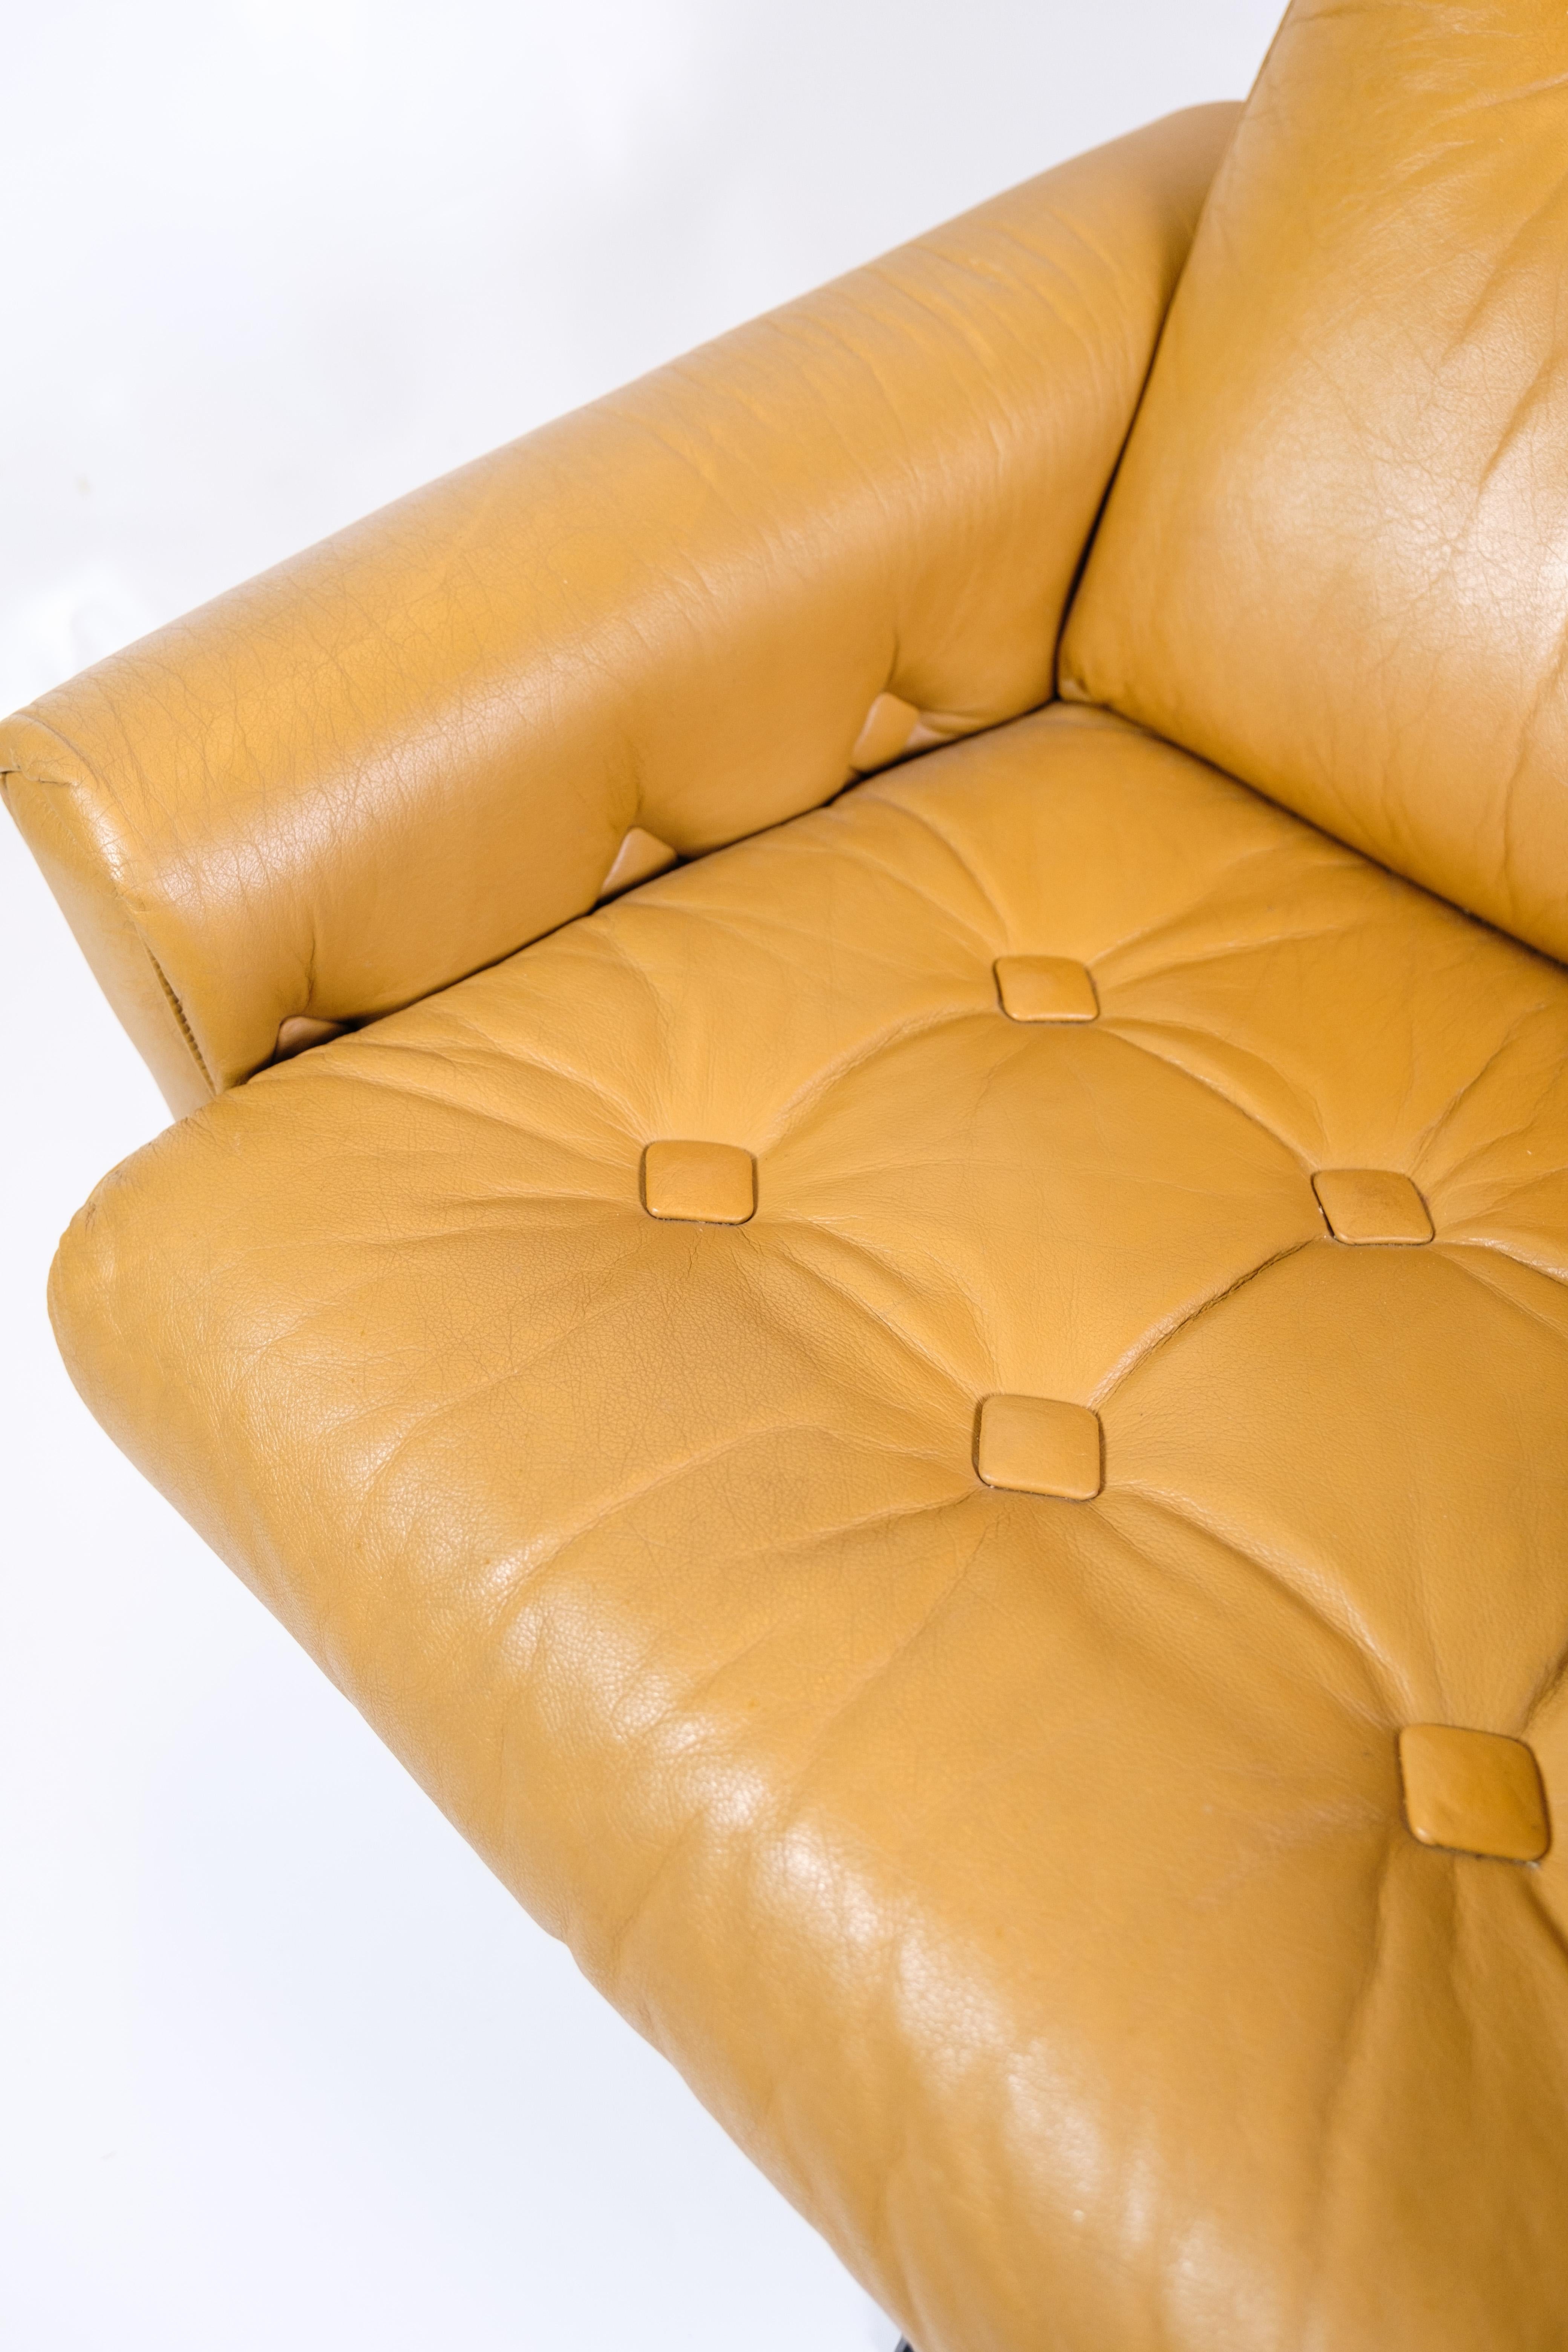 Der Sessel aus braunem Leder, ein Beispiel für dänisches Design aus den 1980er Jahren, strahlt sowohl Komfort als auch Stil aus. Die tiefe, warme Farbe des braunen Leders verleiht dem Sessel ein raffiniertes Aussehen, während das weiche Leder jeder